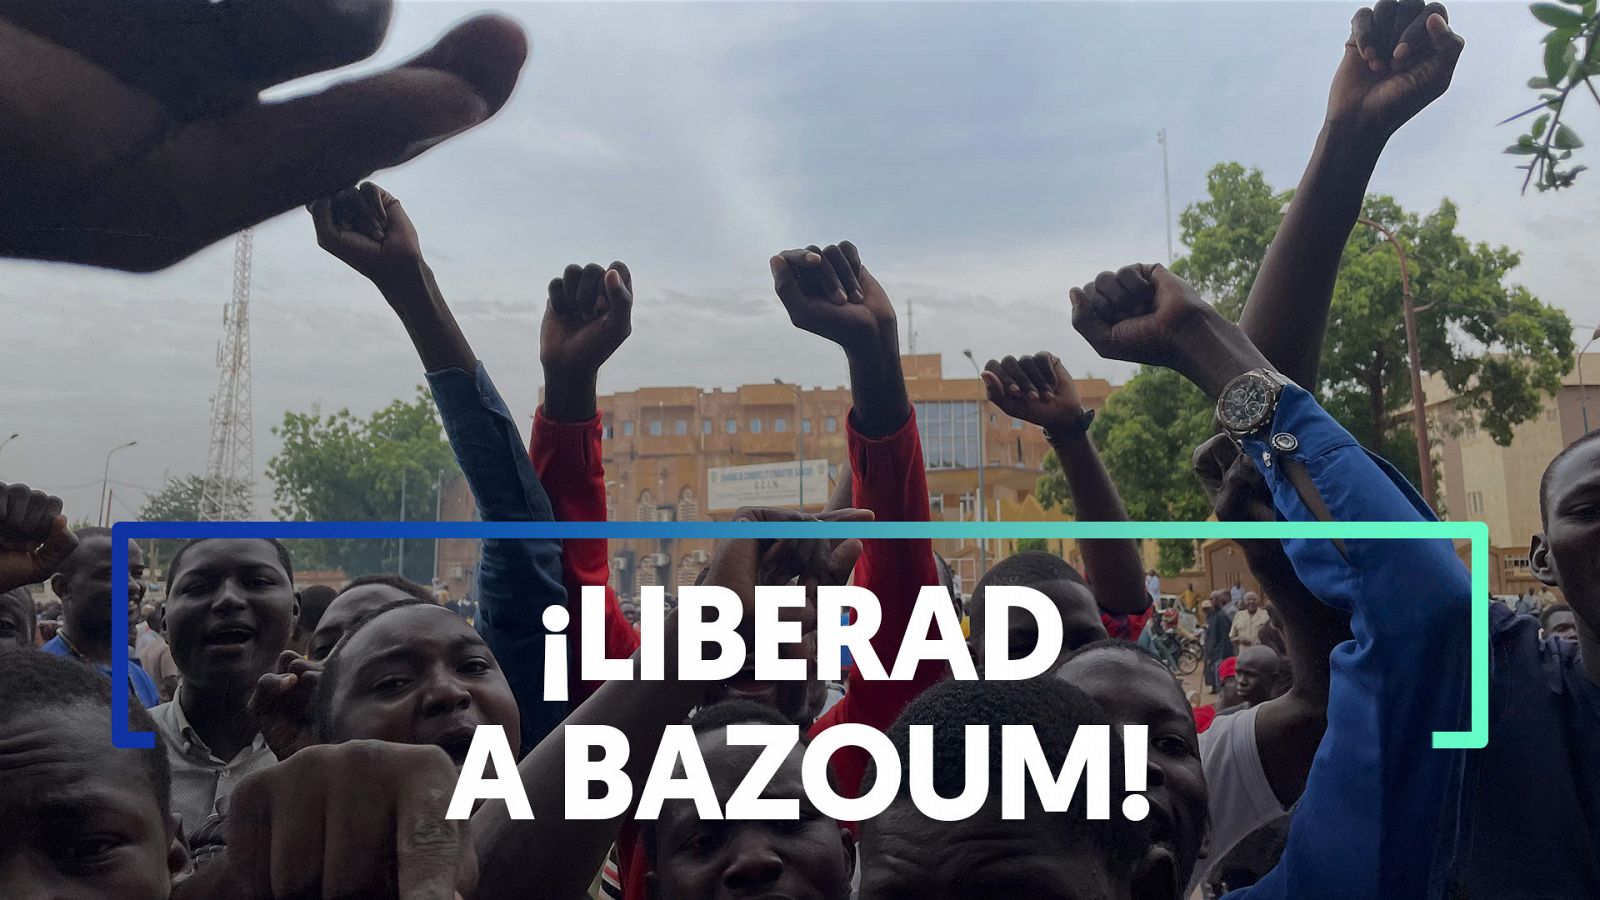 Níger: El presidente Bazoum llama a proteger la democracia tras el golpe de Estado